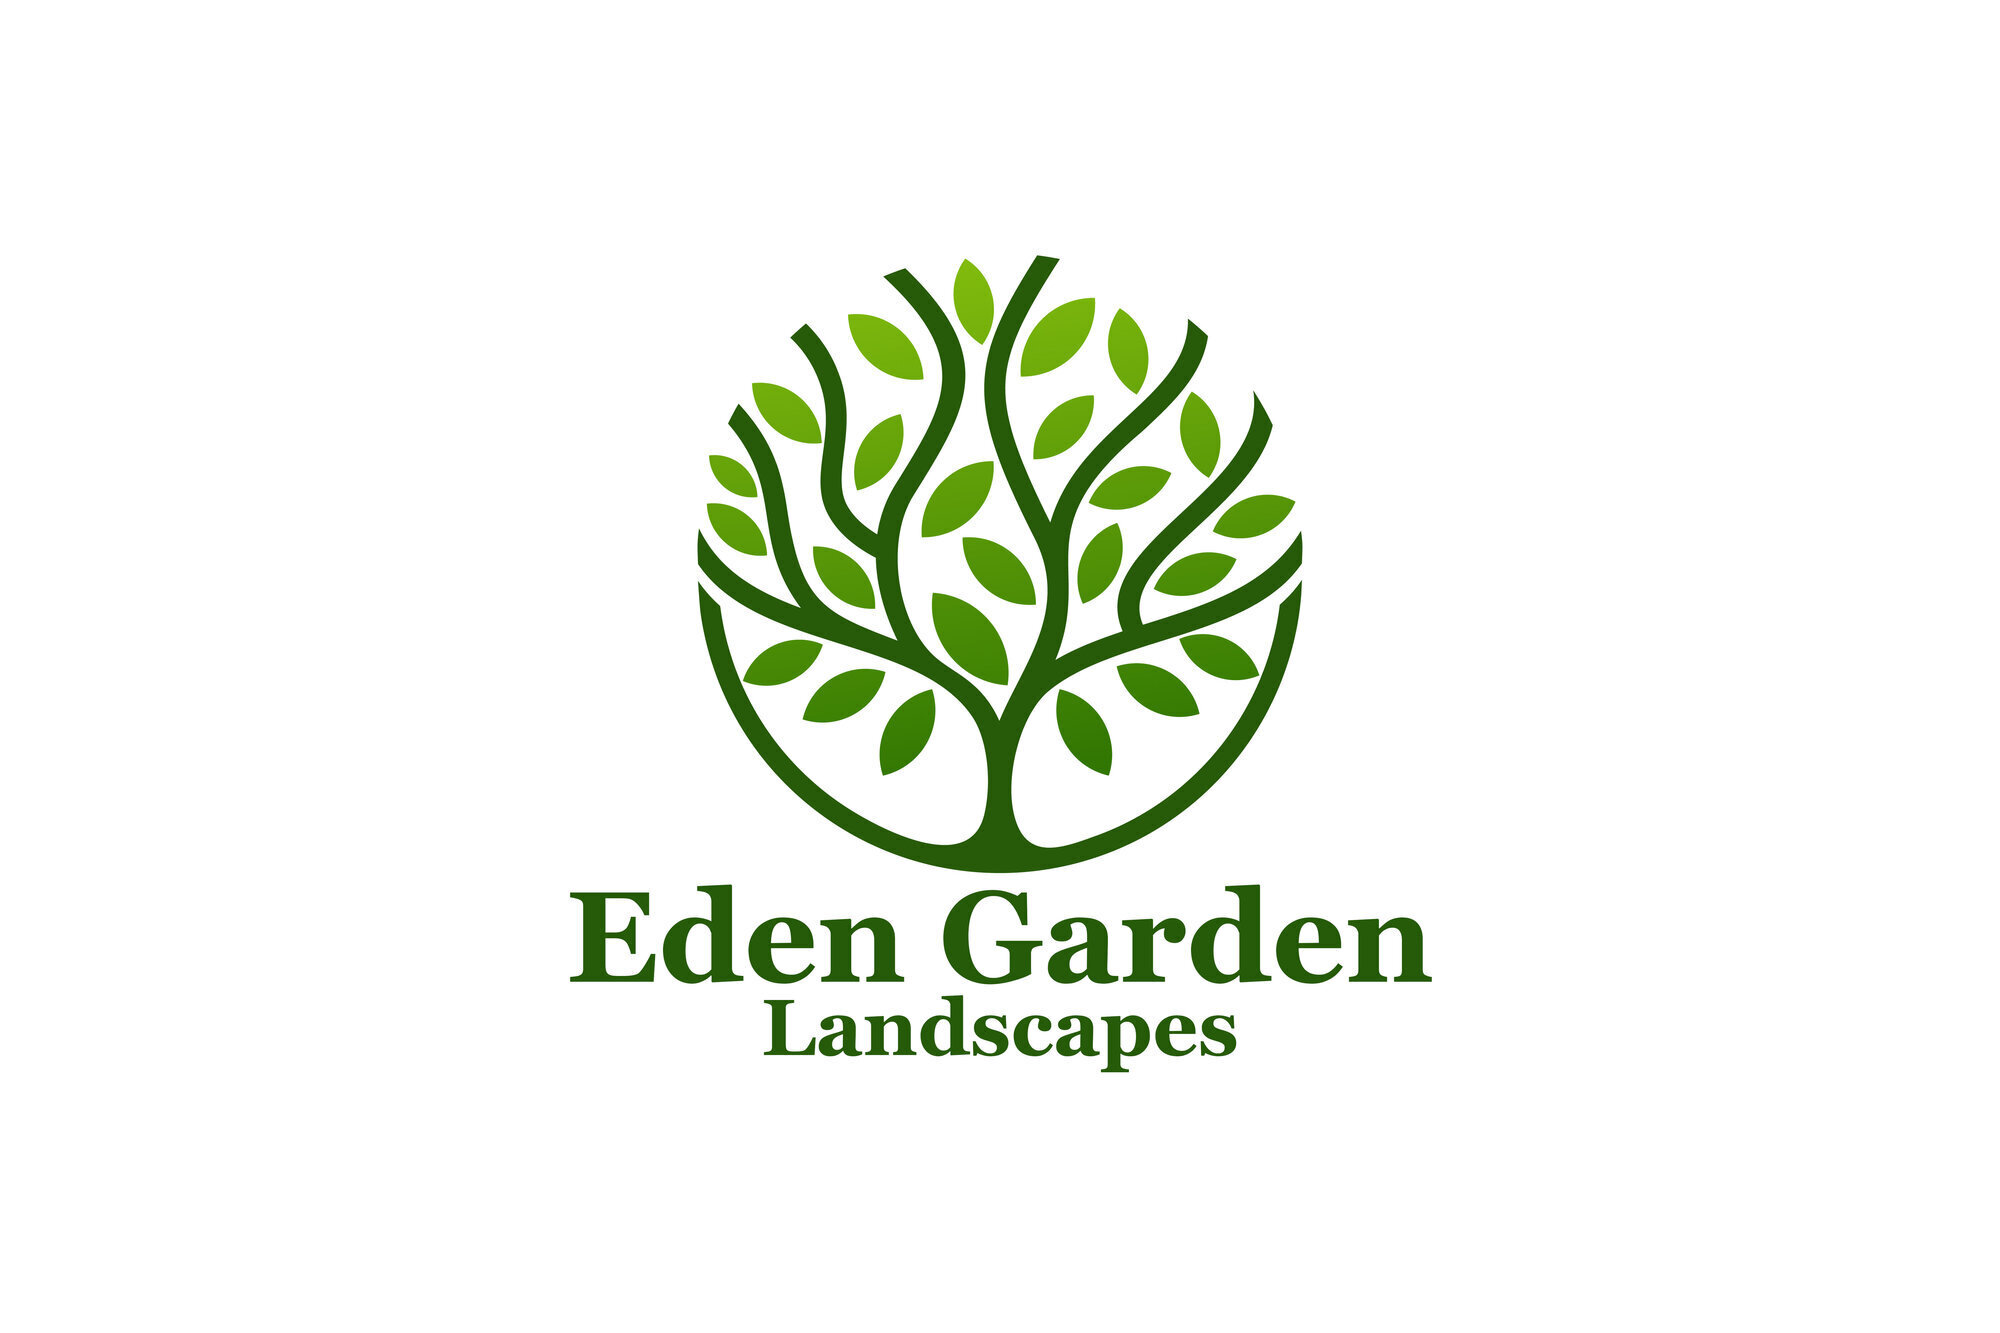 Images Eden garden landscapes